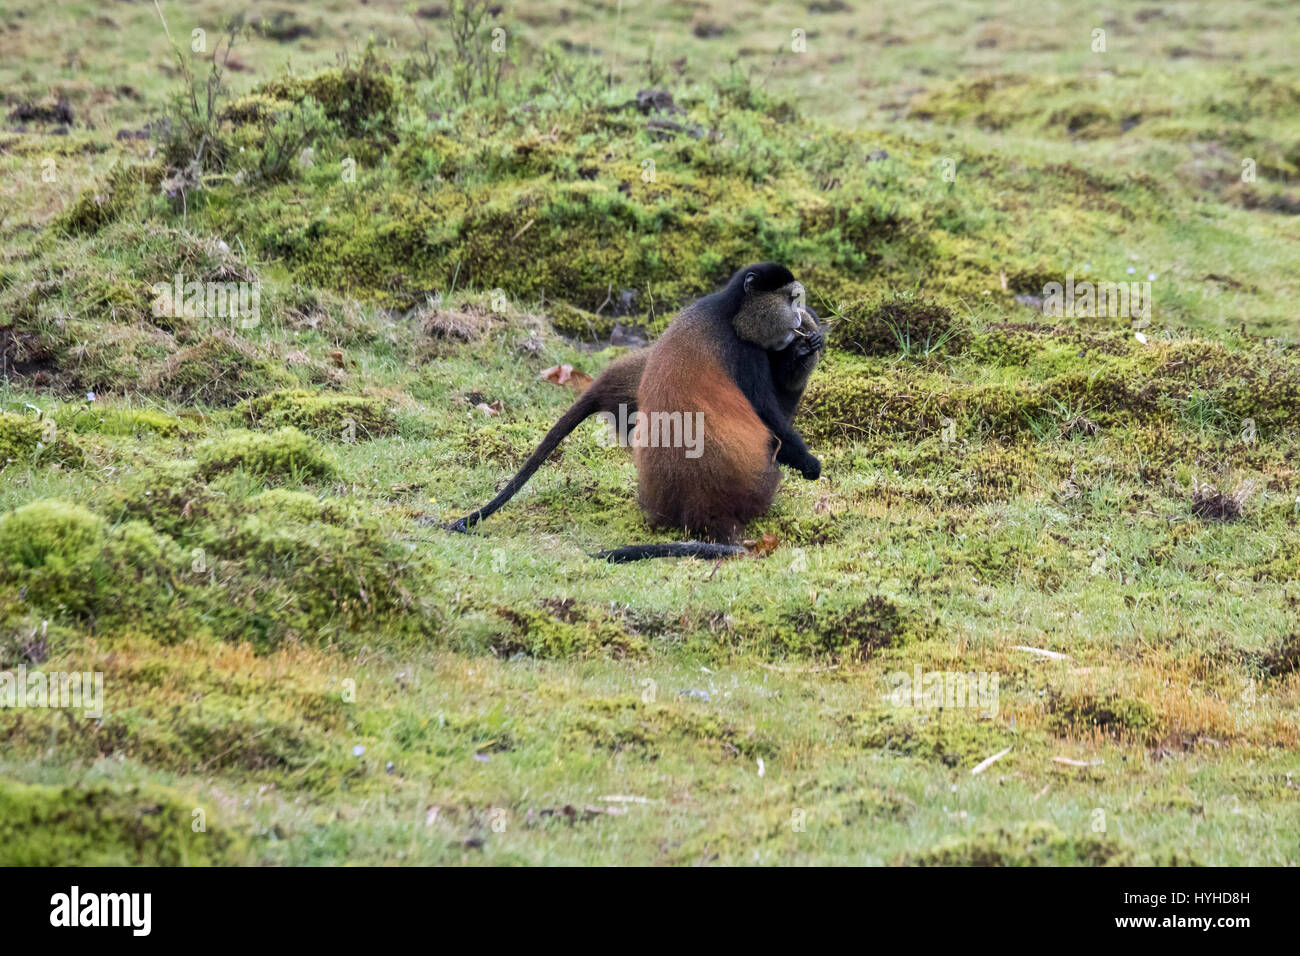 Endangered golden monkey in Virunga forest of Volcanoes National Park, Rwanda. Stock Photo